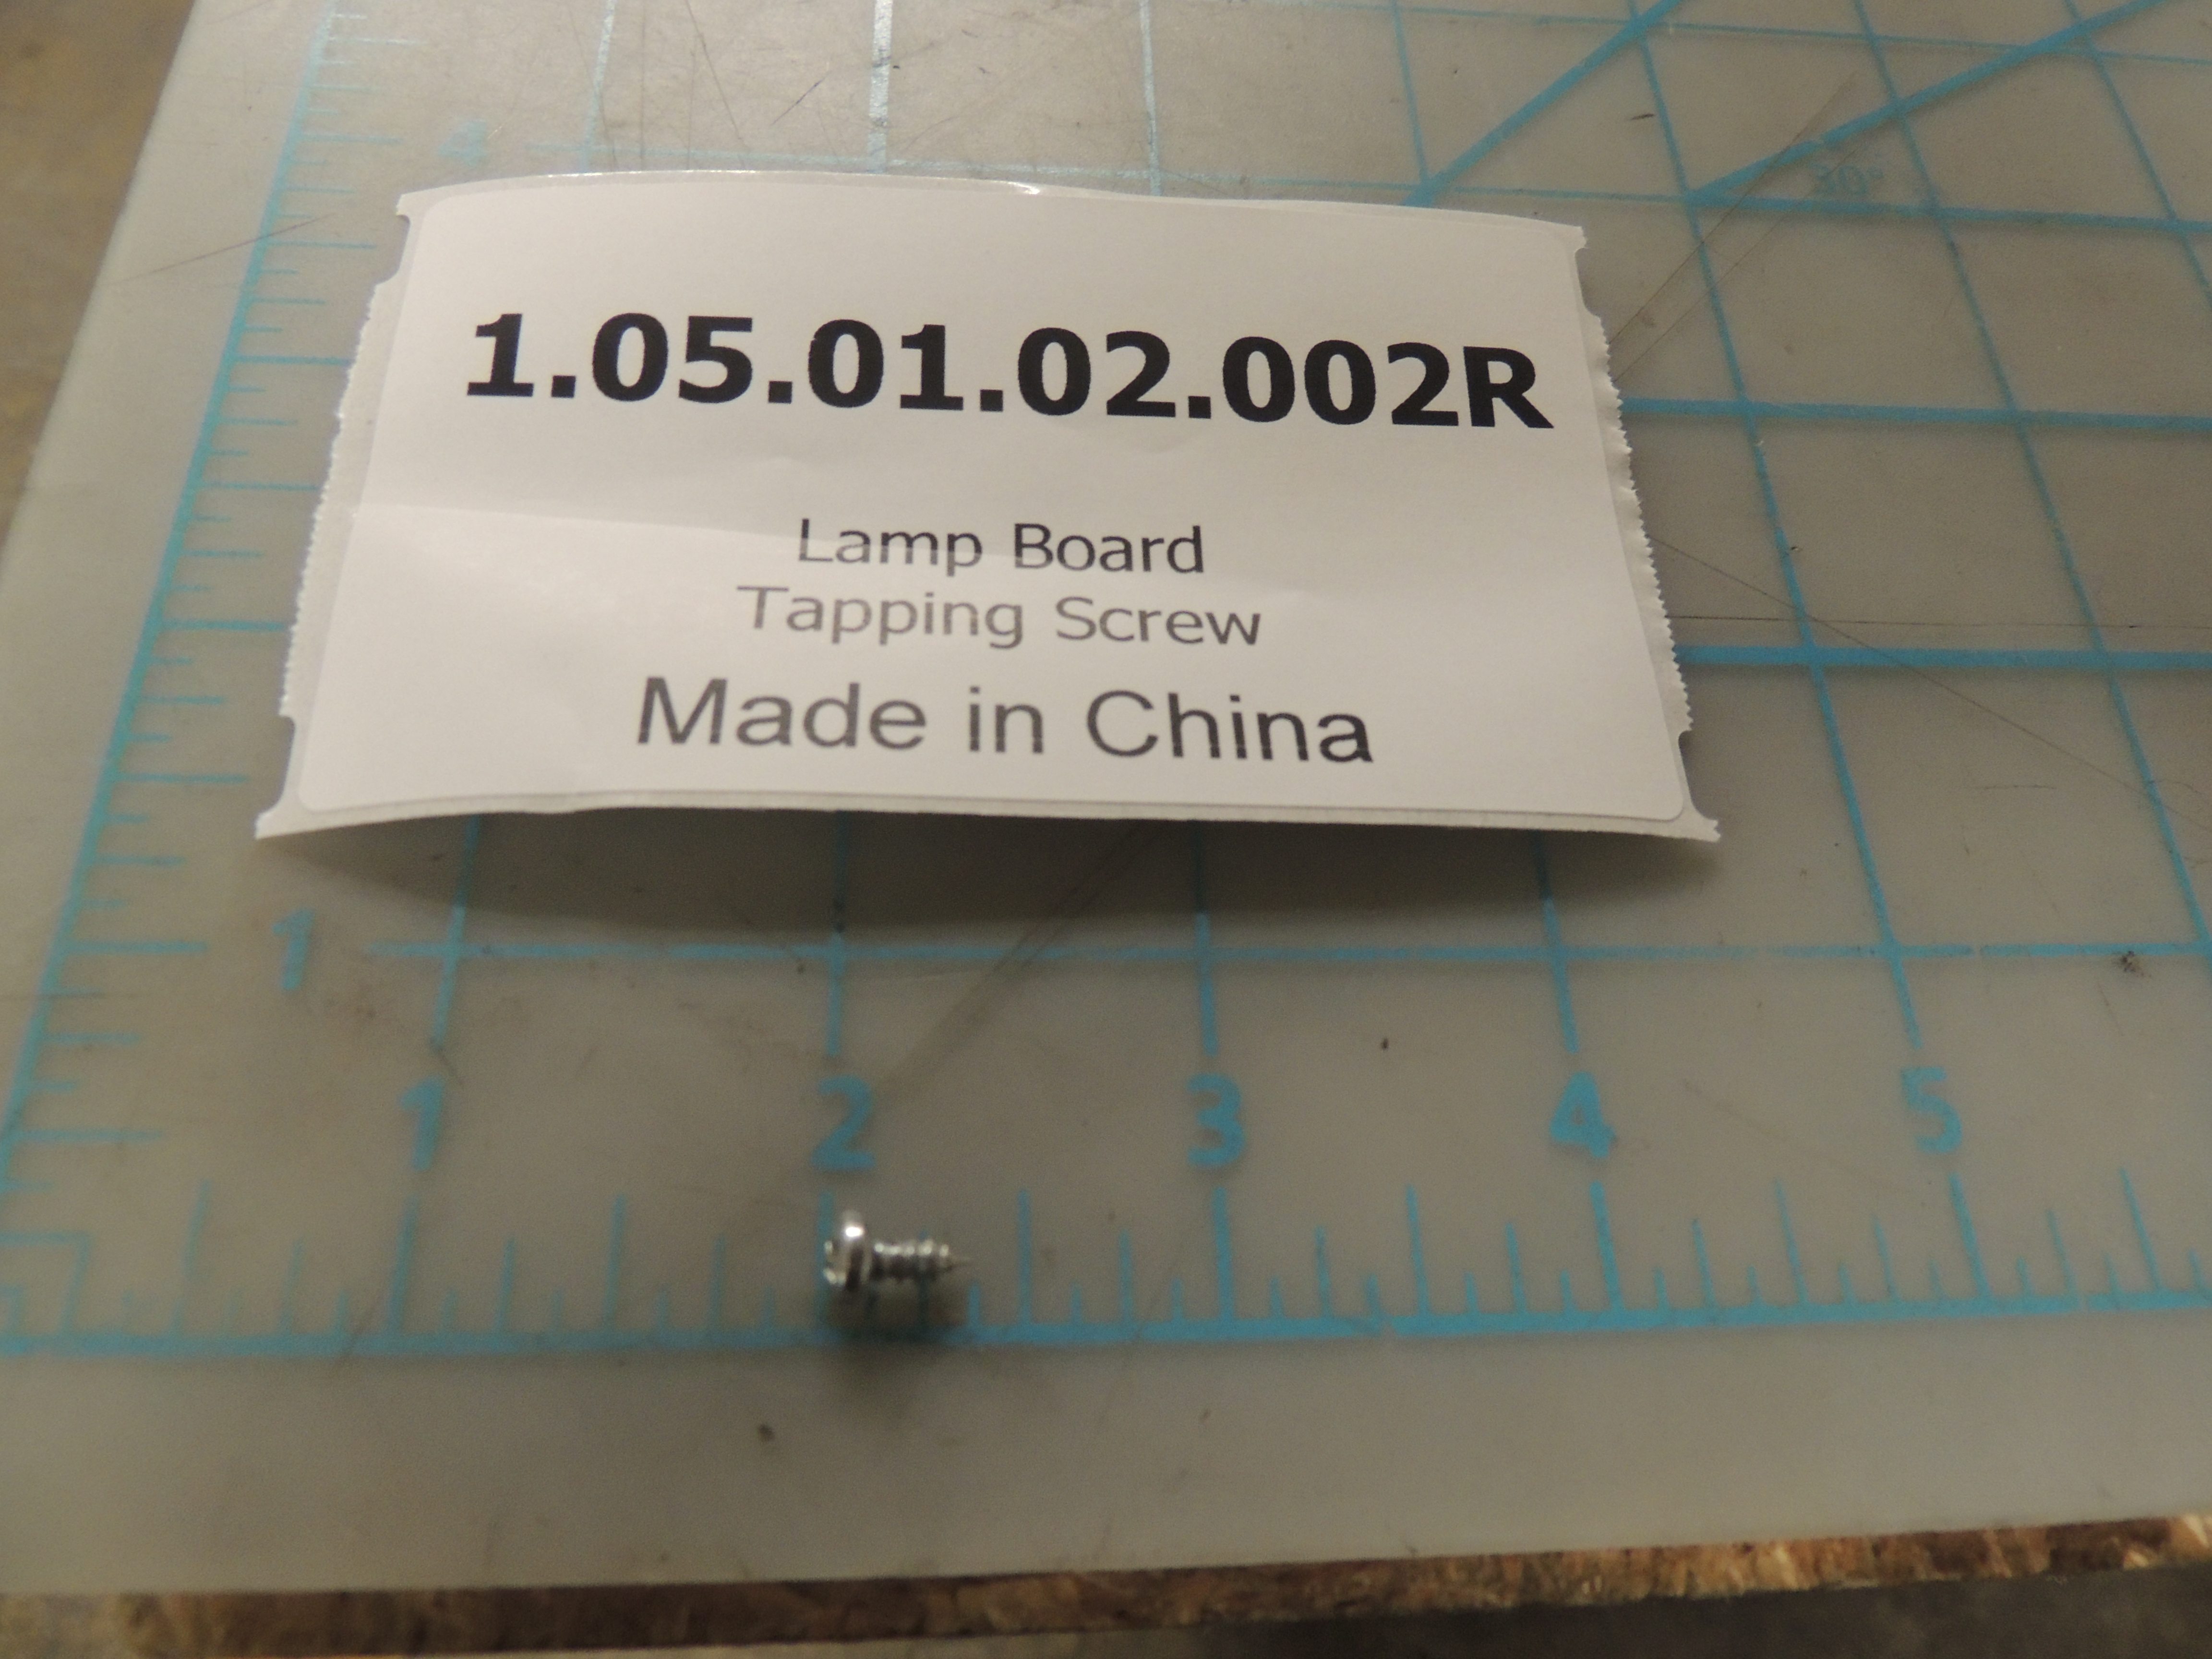 Lamp Board Tapping Screw